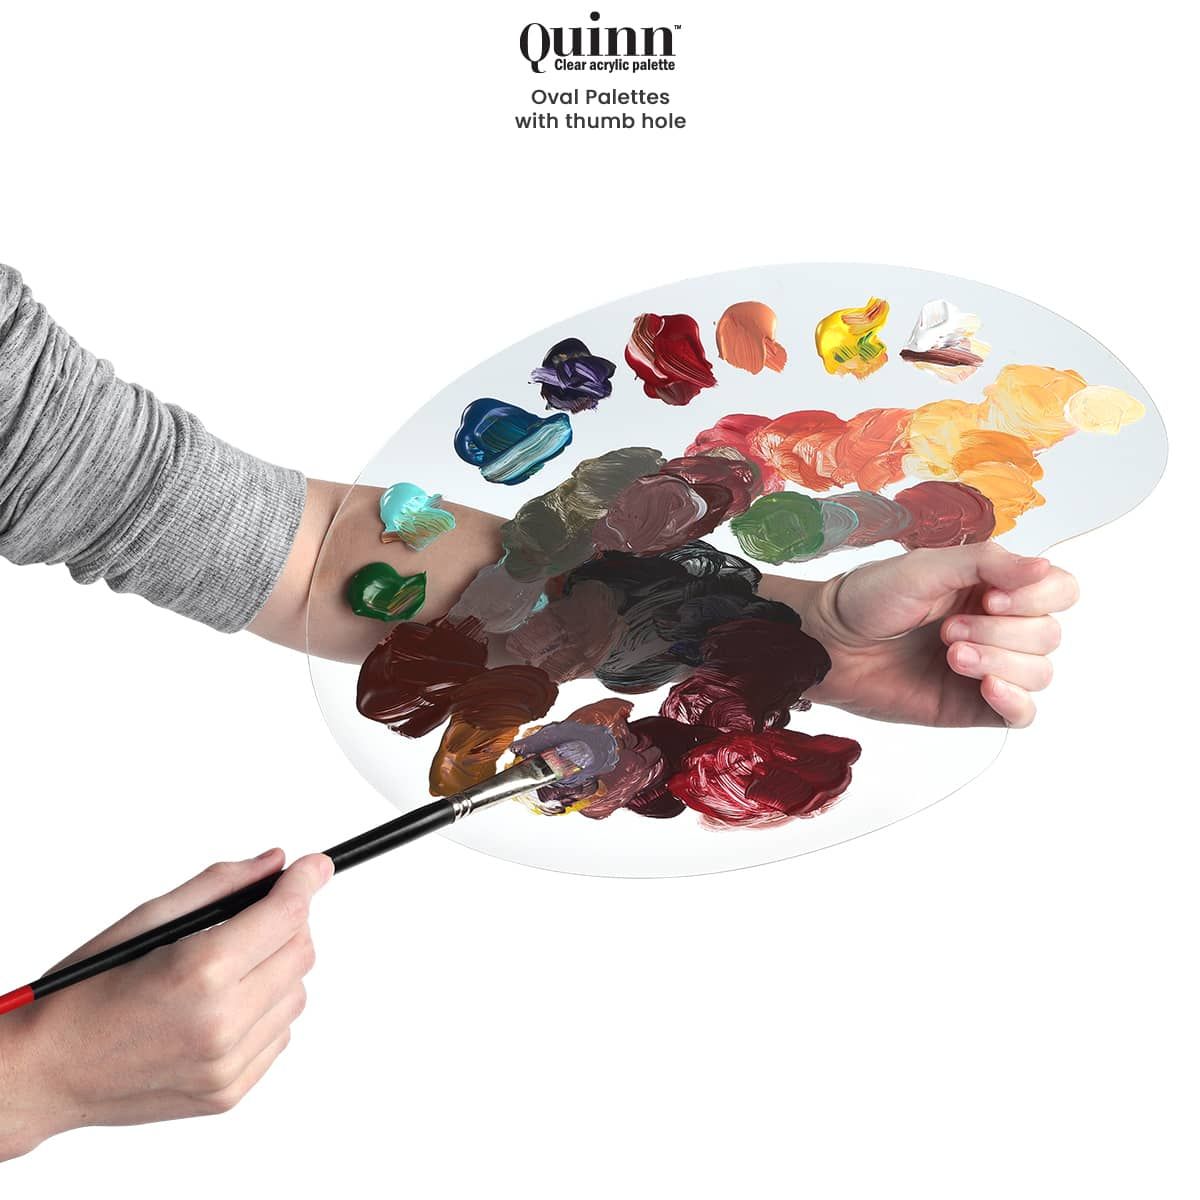 Quinn Clear Acrylic Palette